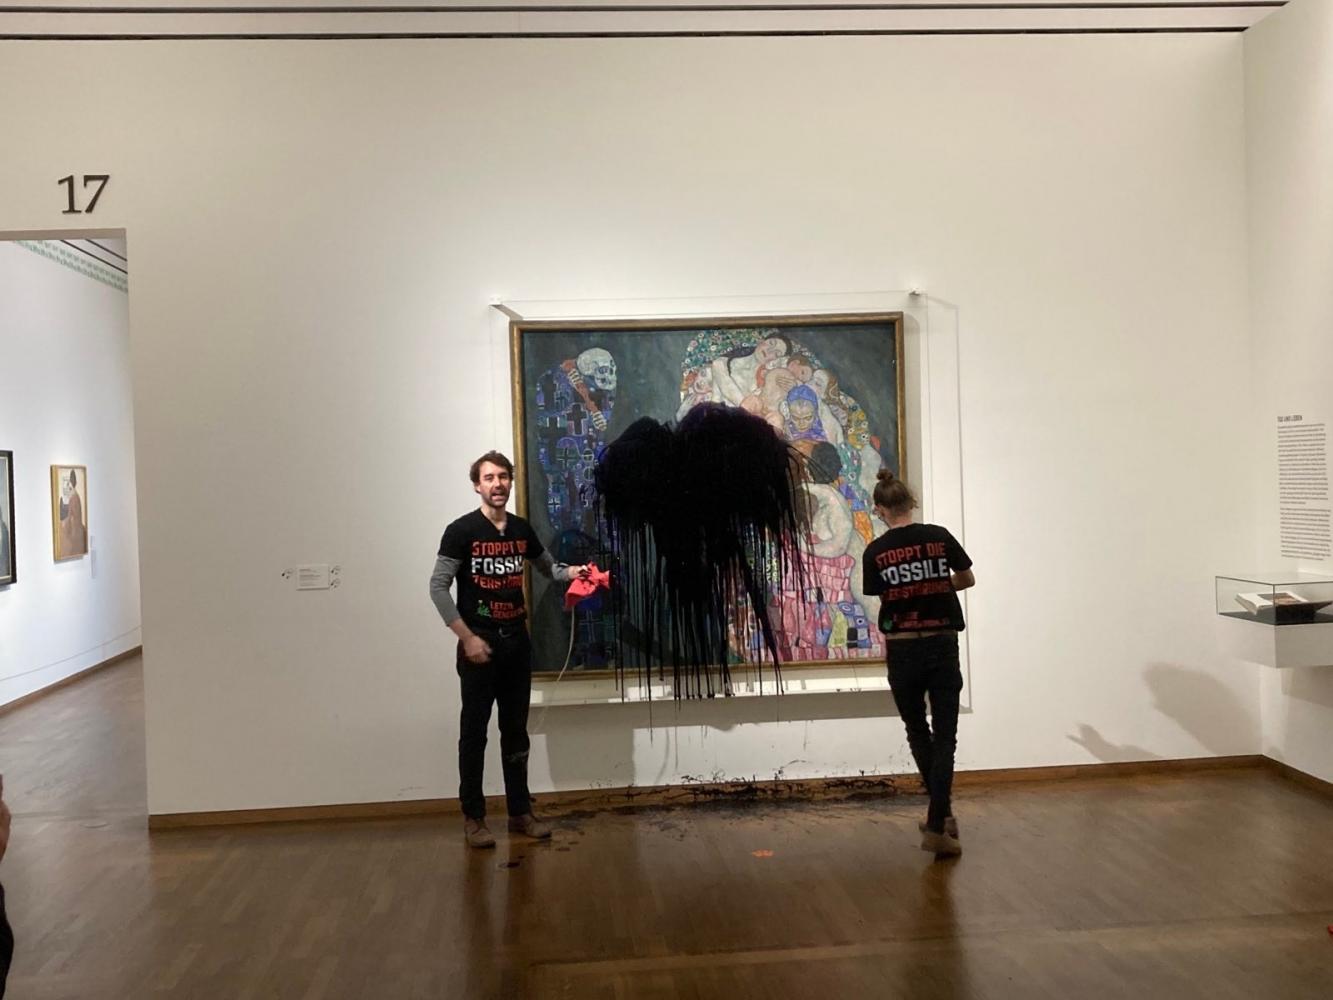 Klimaaktivisten der Gruppe "Letzte Generation" haben im Leopold Museum das Gemälde "Tod und Leben" von Gustav Klimt mit Öl überschüttet